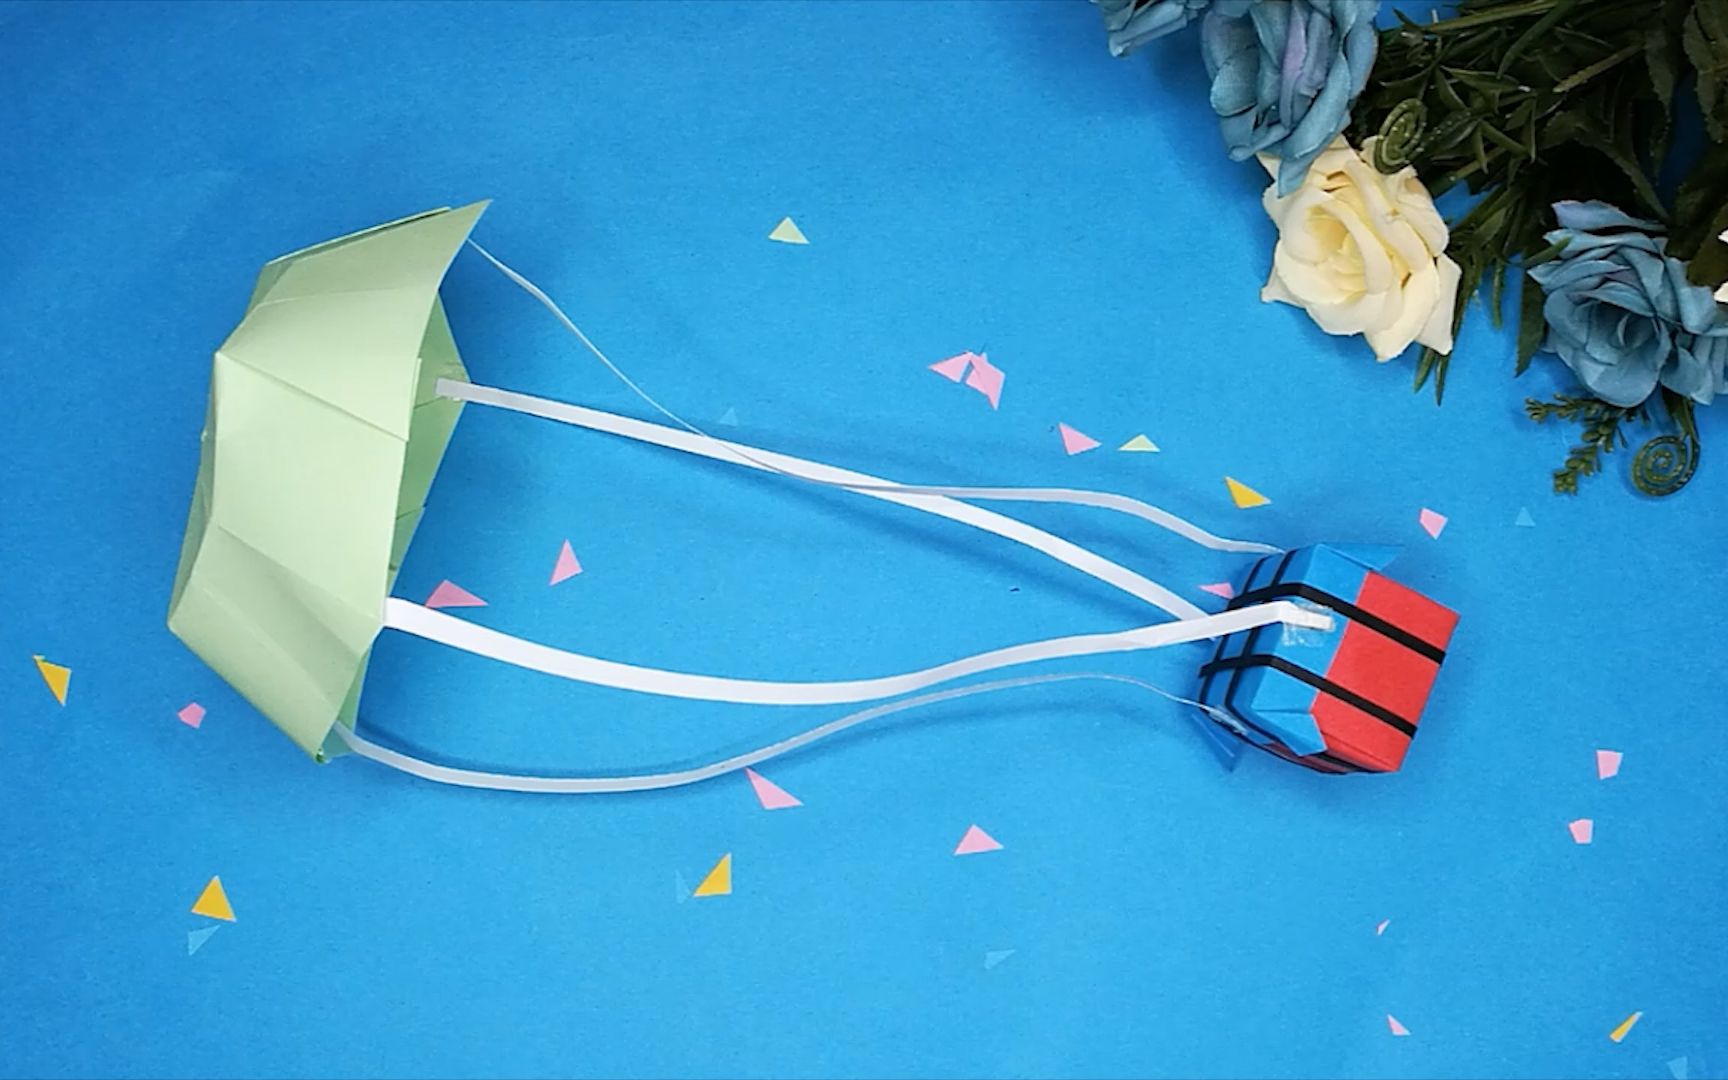 折纸降落伞的折法教程图片